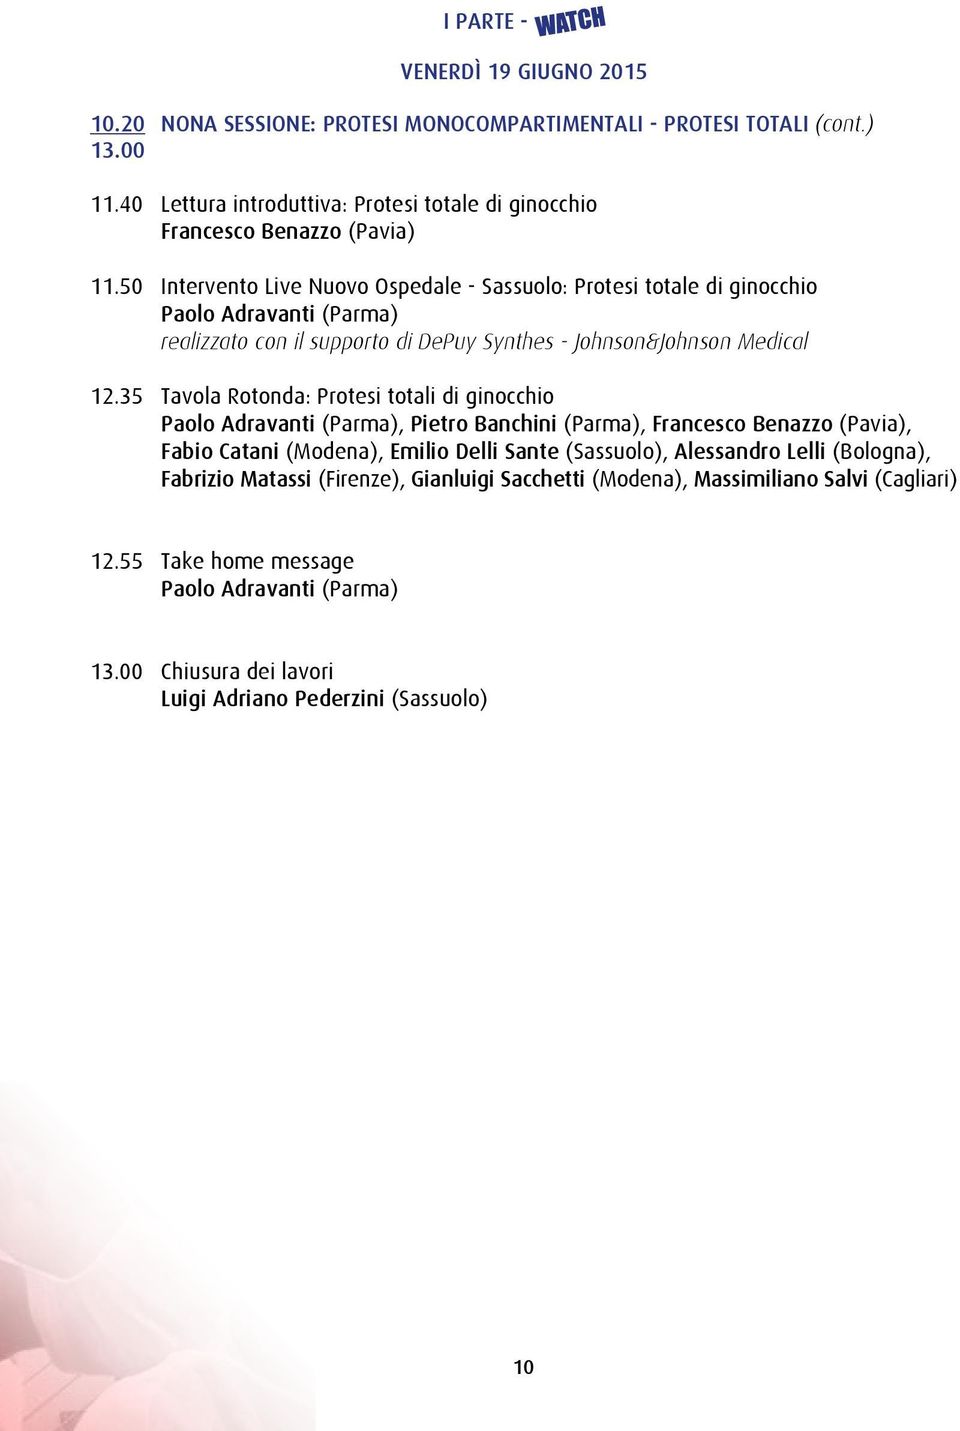 35 Tavola Rotonda: Protesi totali di ginocchio Paolo Adravanti (Parma), Pietro Banchini (Parma), Francesco Benazzo (Pavia), Fabio Catani (Modena), Emilio Delli Sante (Sassuolo), Alessandro